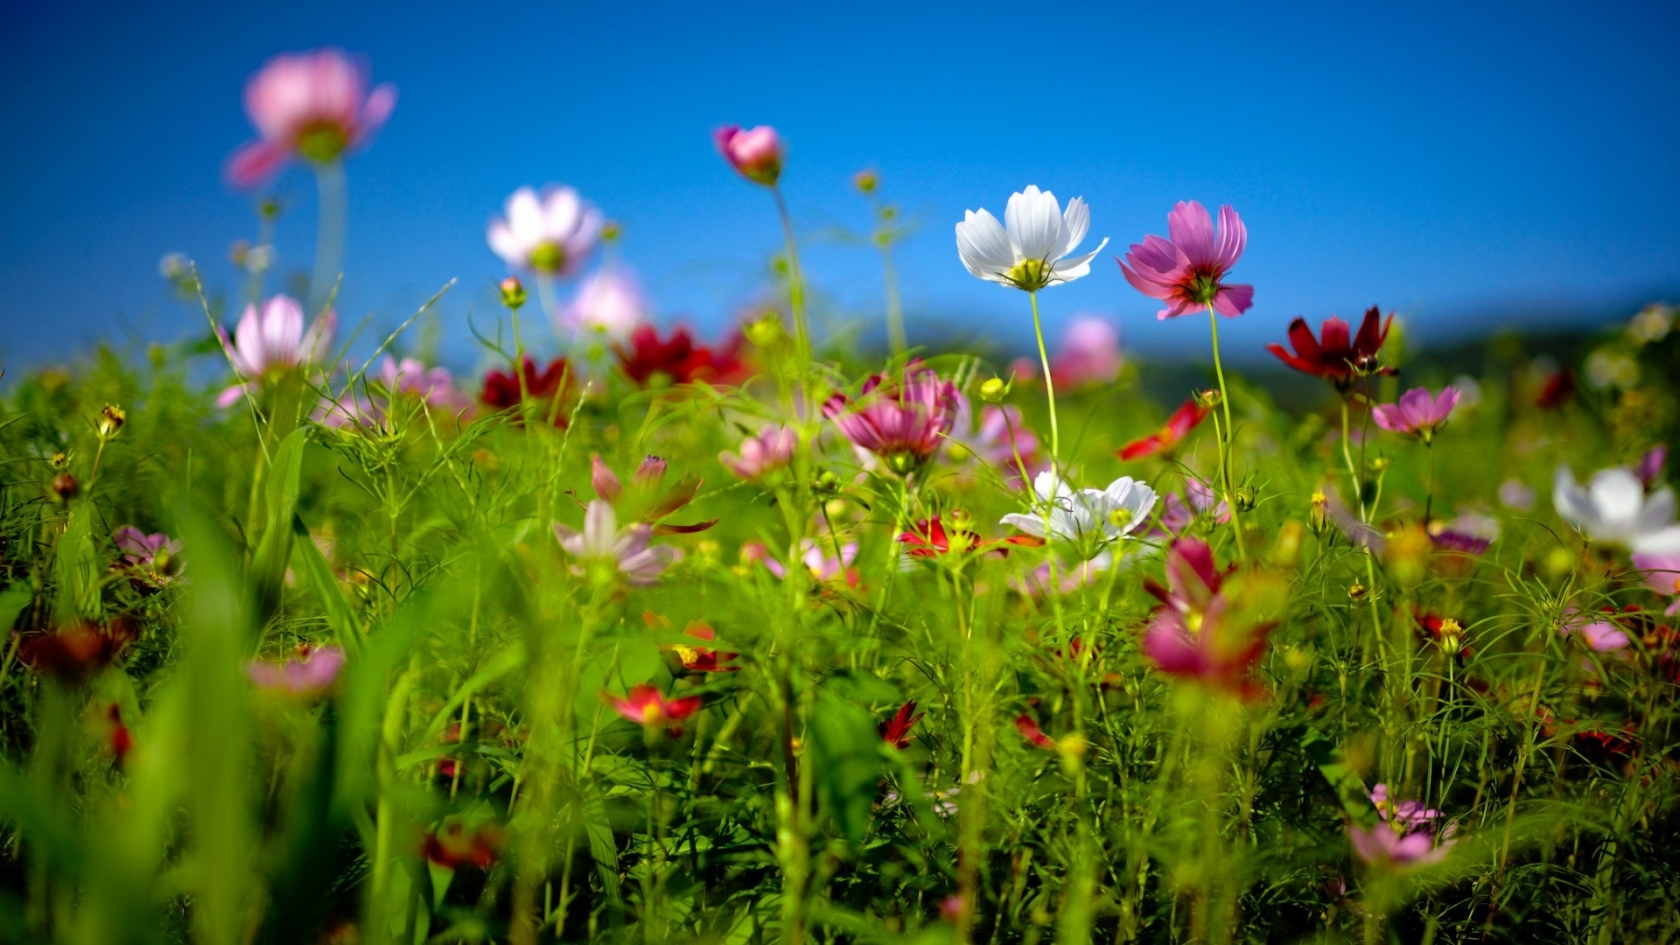 Spring Flower Land for 1680 x 945 HDTV resolution